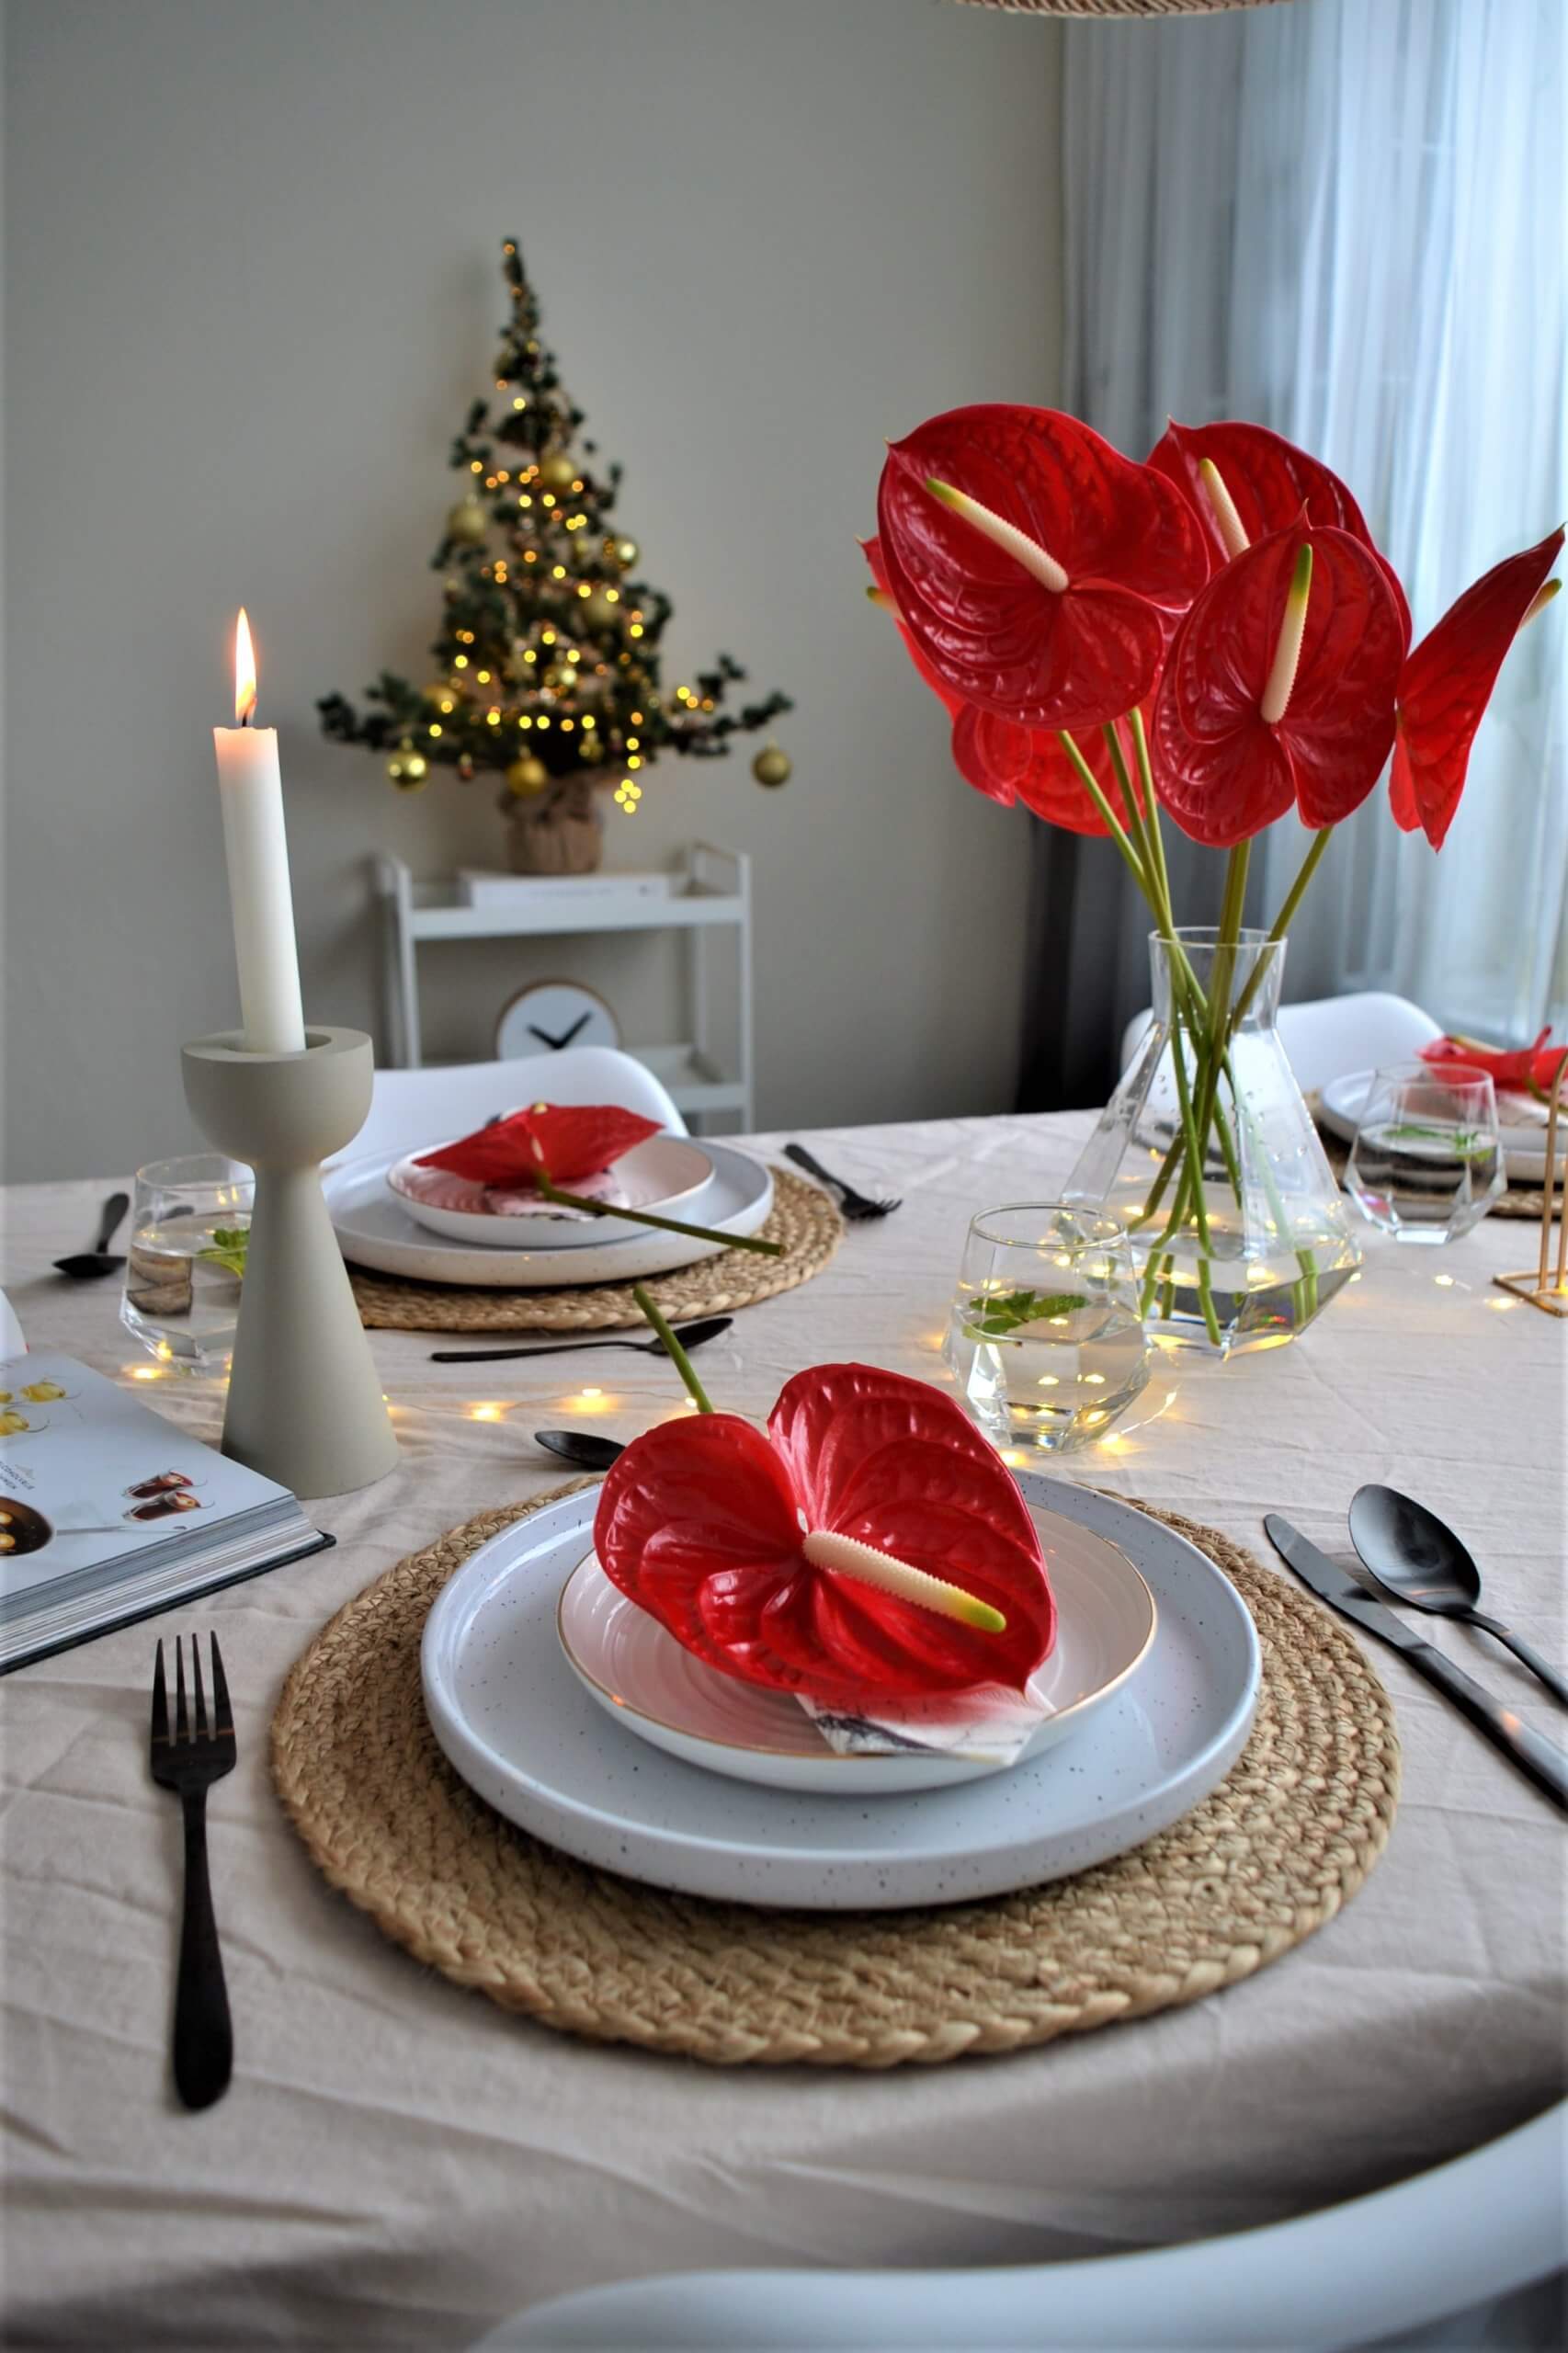 Décoration de la table de Noël avec des anthuriums rouges